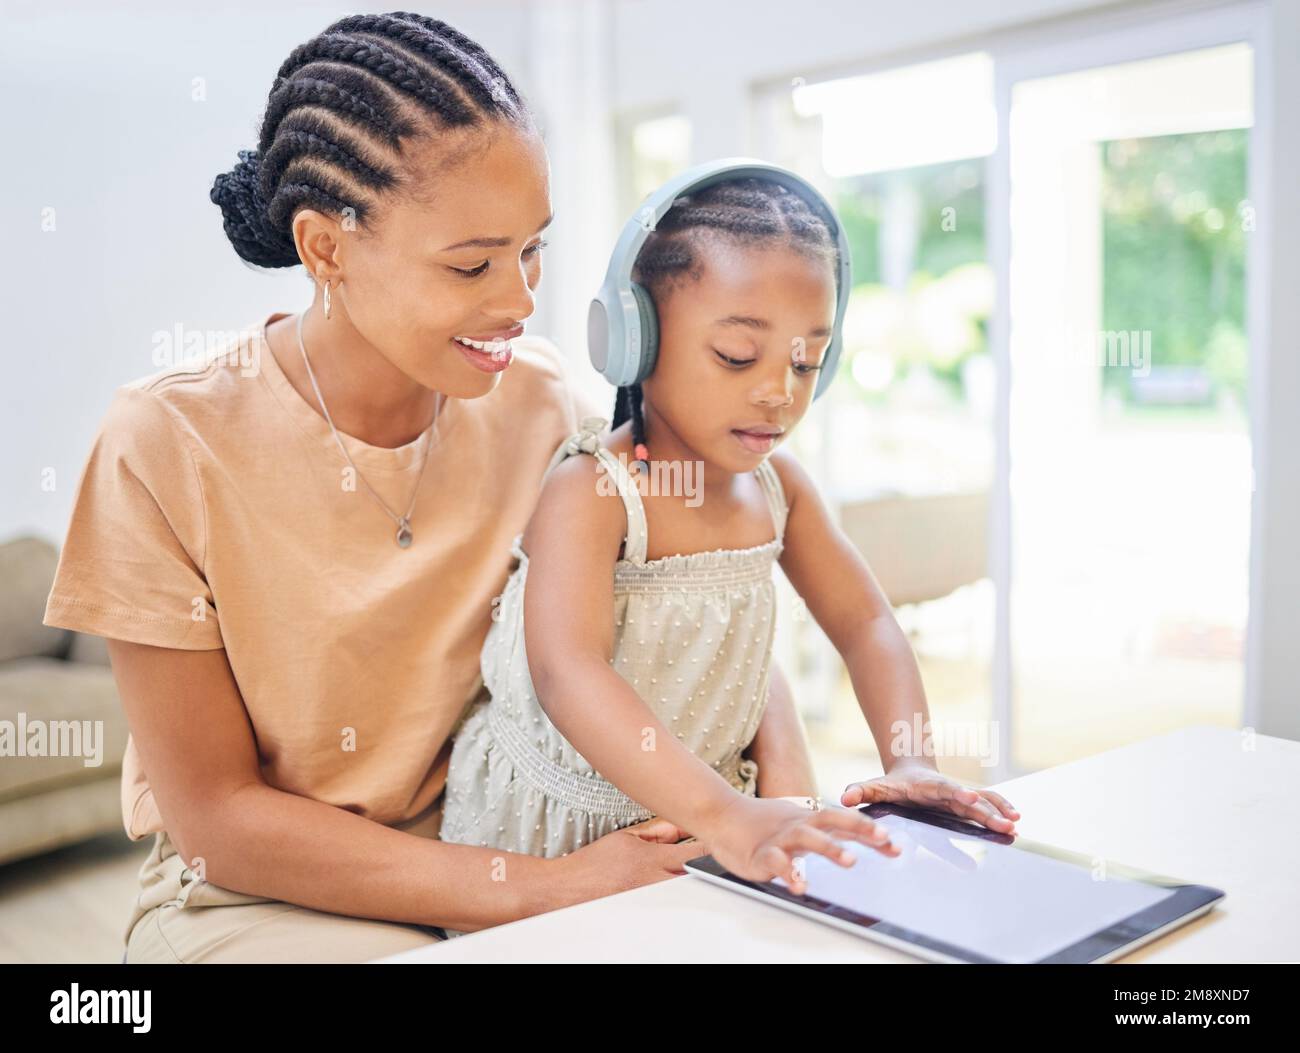 La garder aussi engagée que possible. une jeune mère attrayante assise avec sa fille et l'aidant à apprendre sur une tablette numérique. Banque D'Images